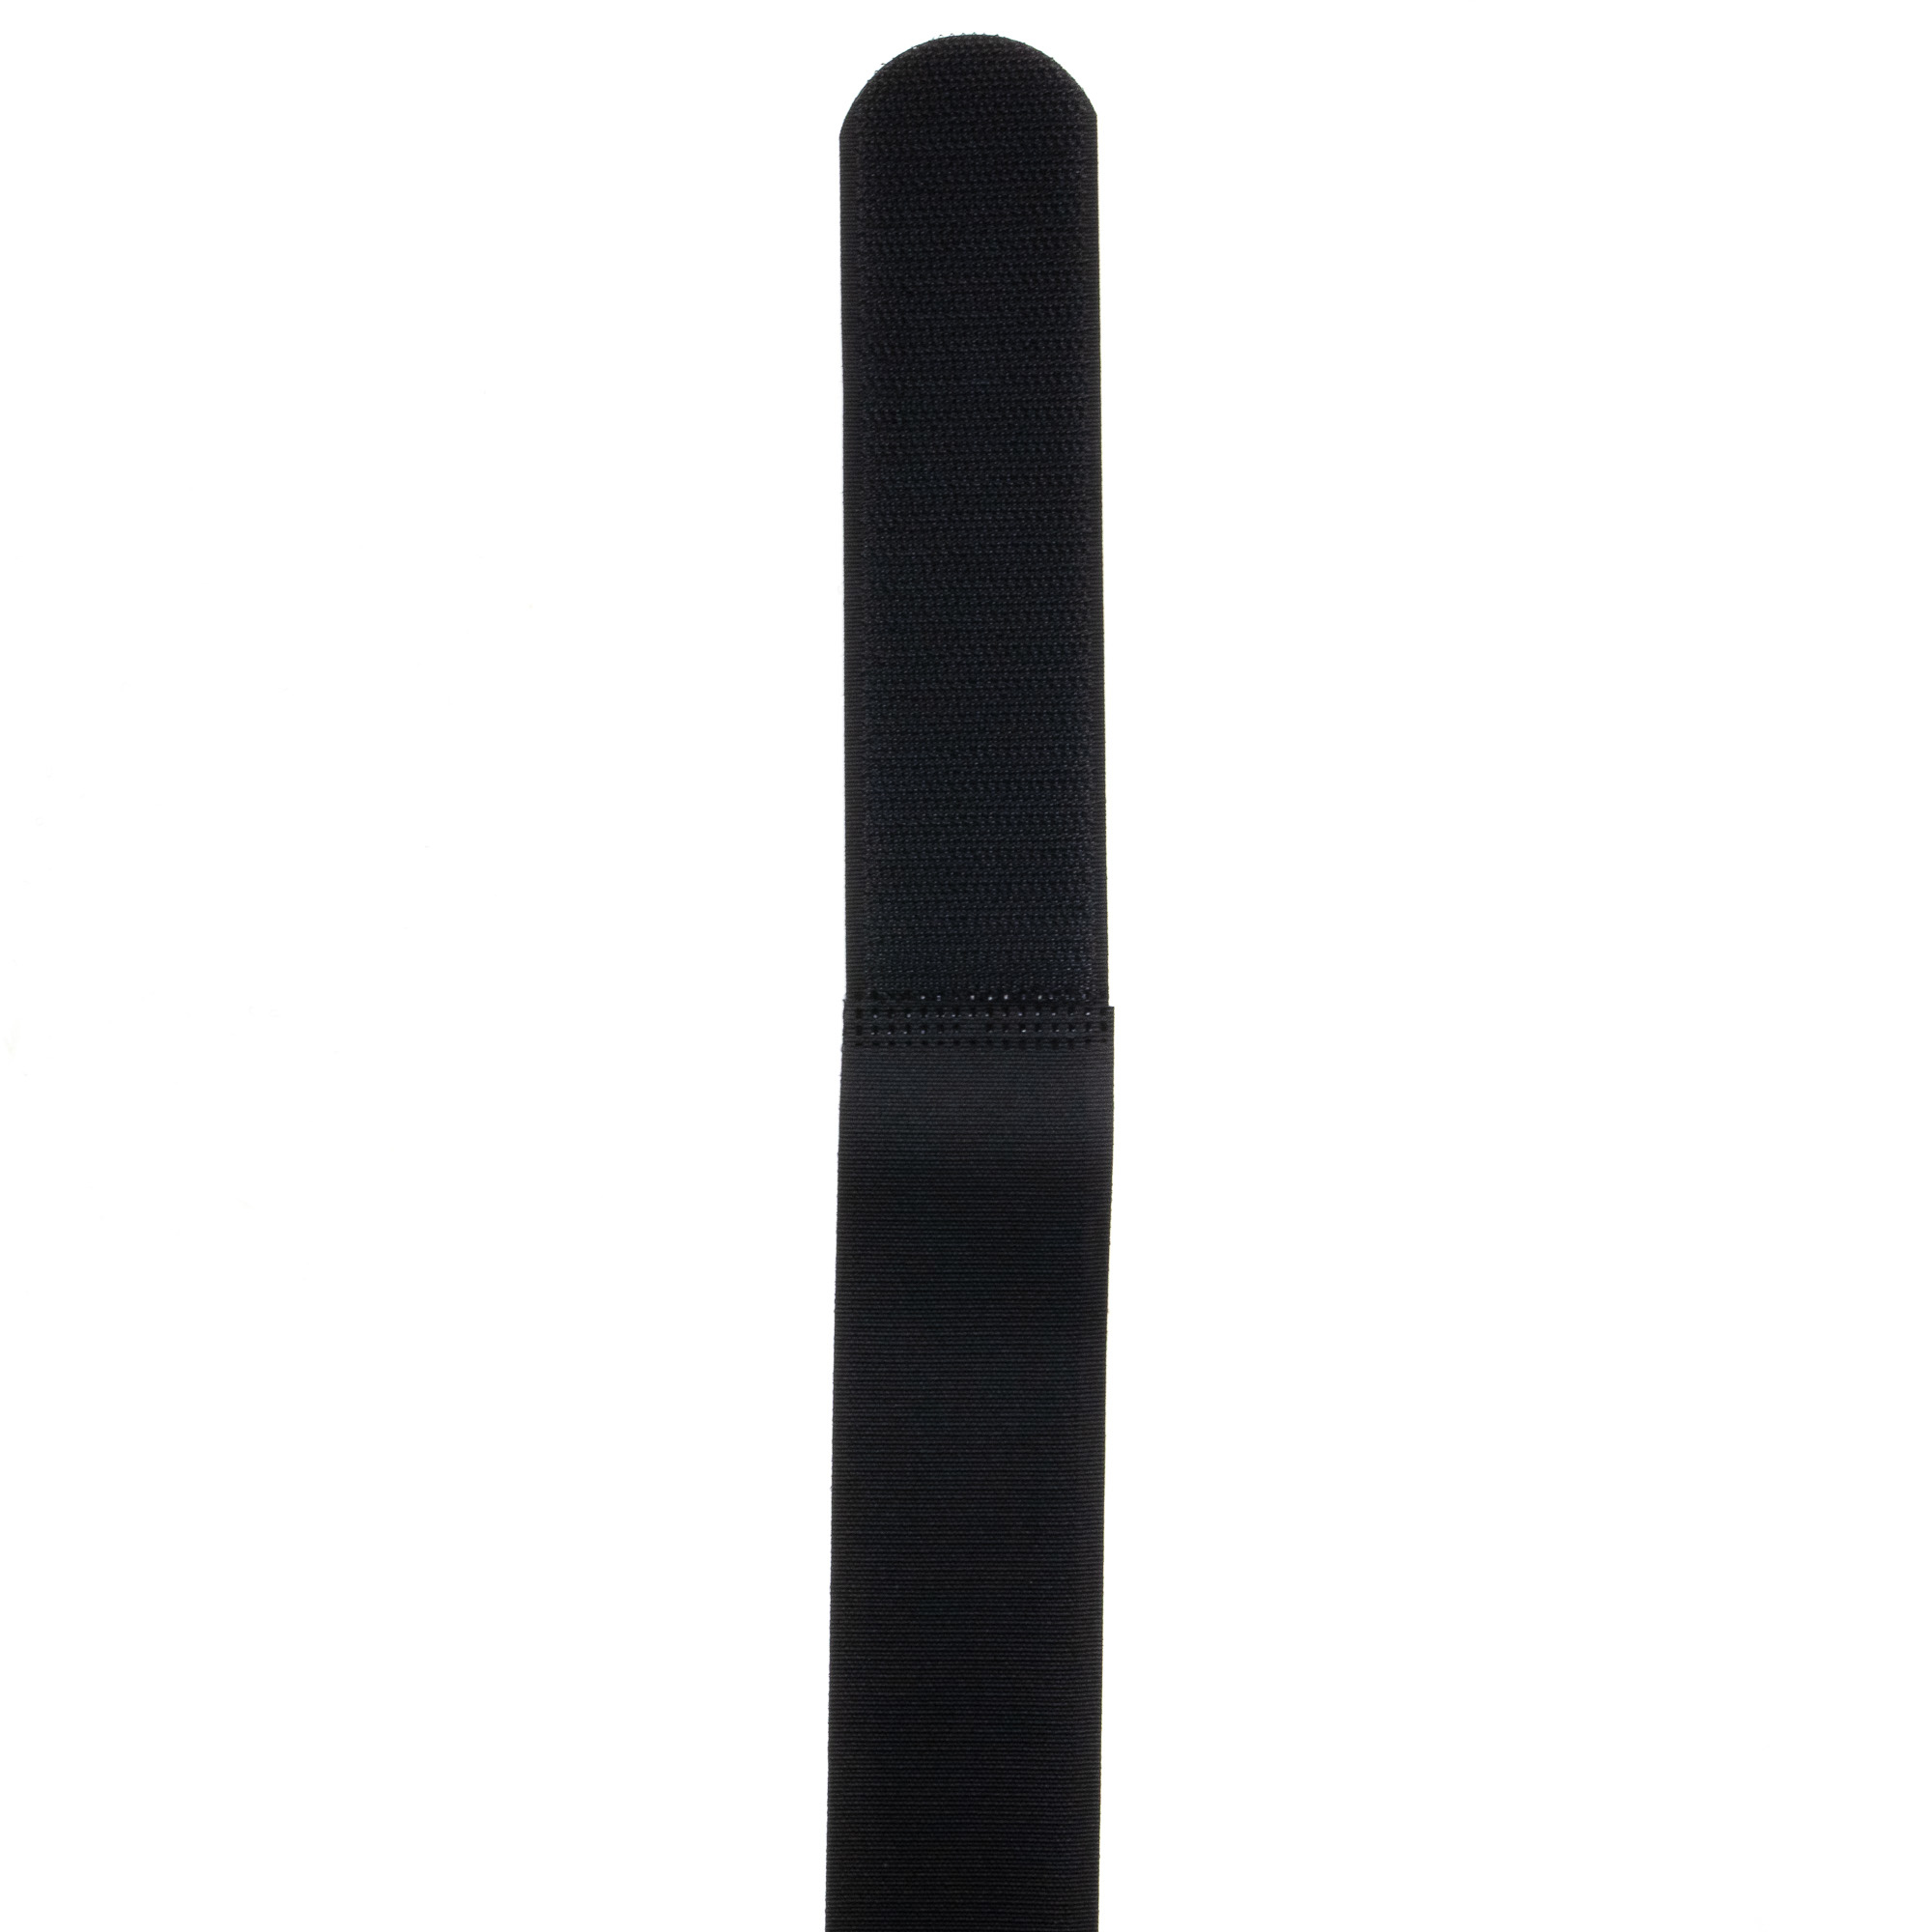 Hook-and-loop strap 800x38, black, crossed, 10PCS